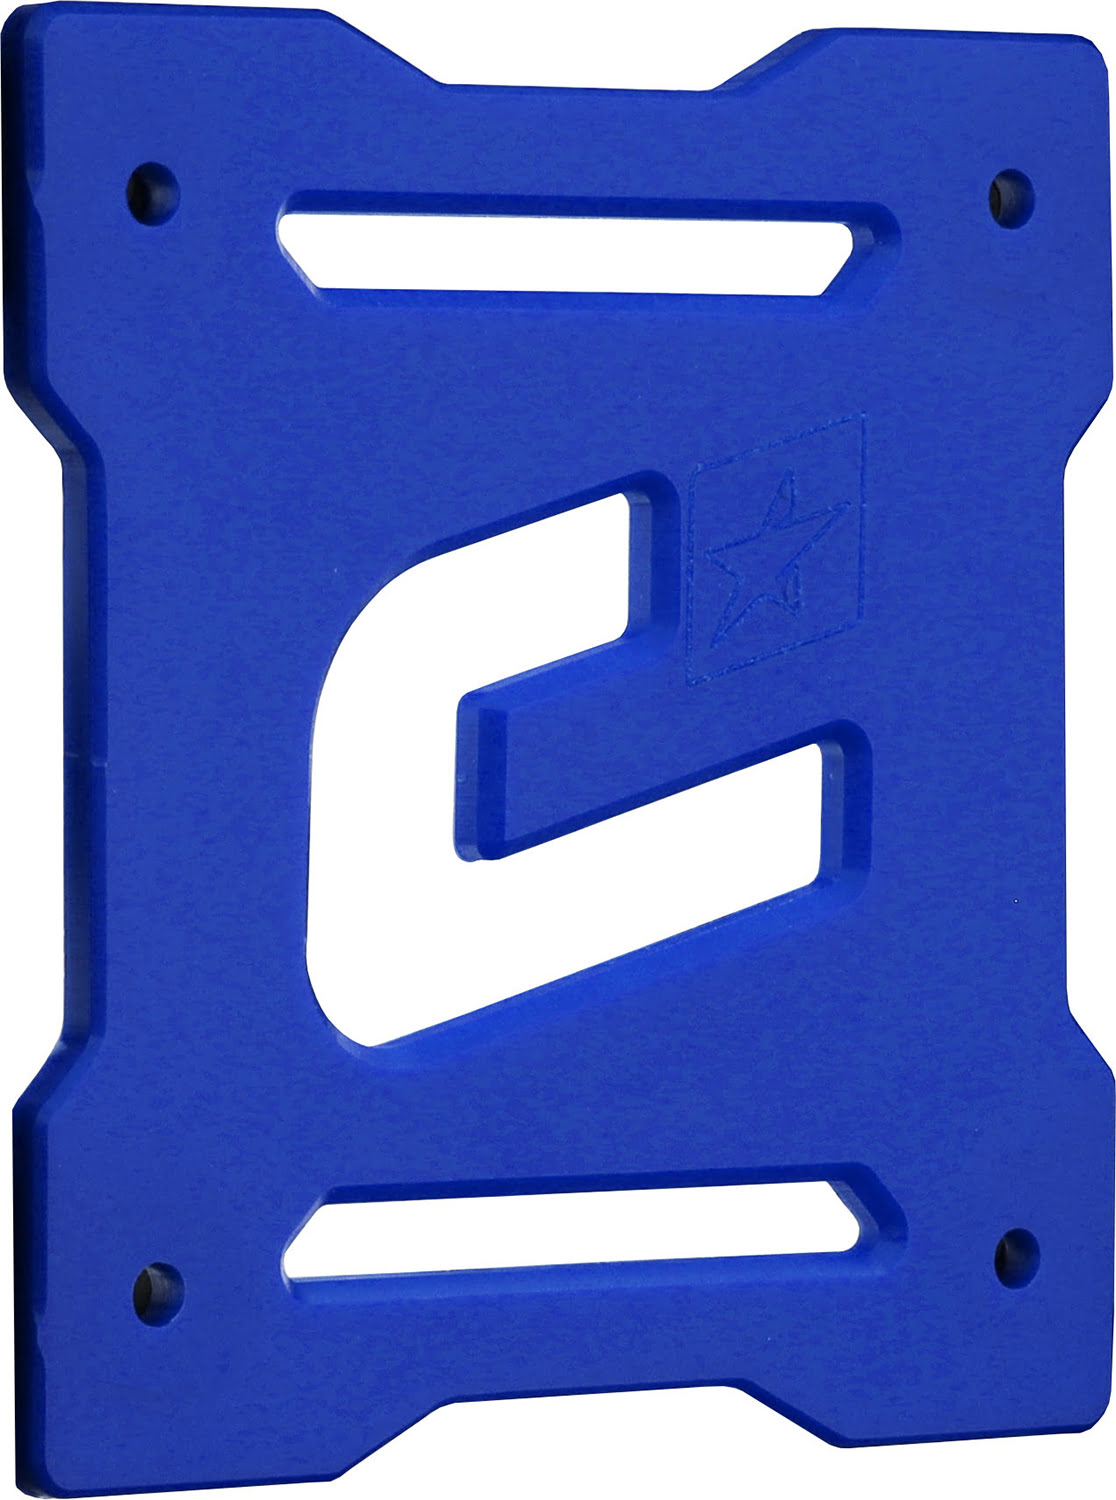 Bumper Plate CR01 Blue - 2CP229A0000400.JPG